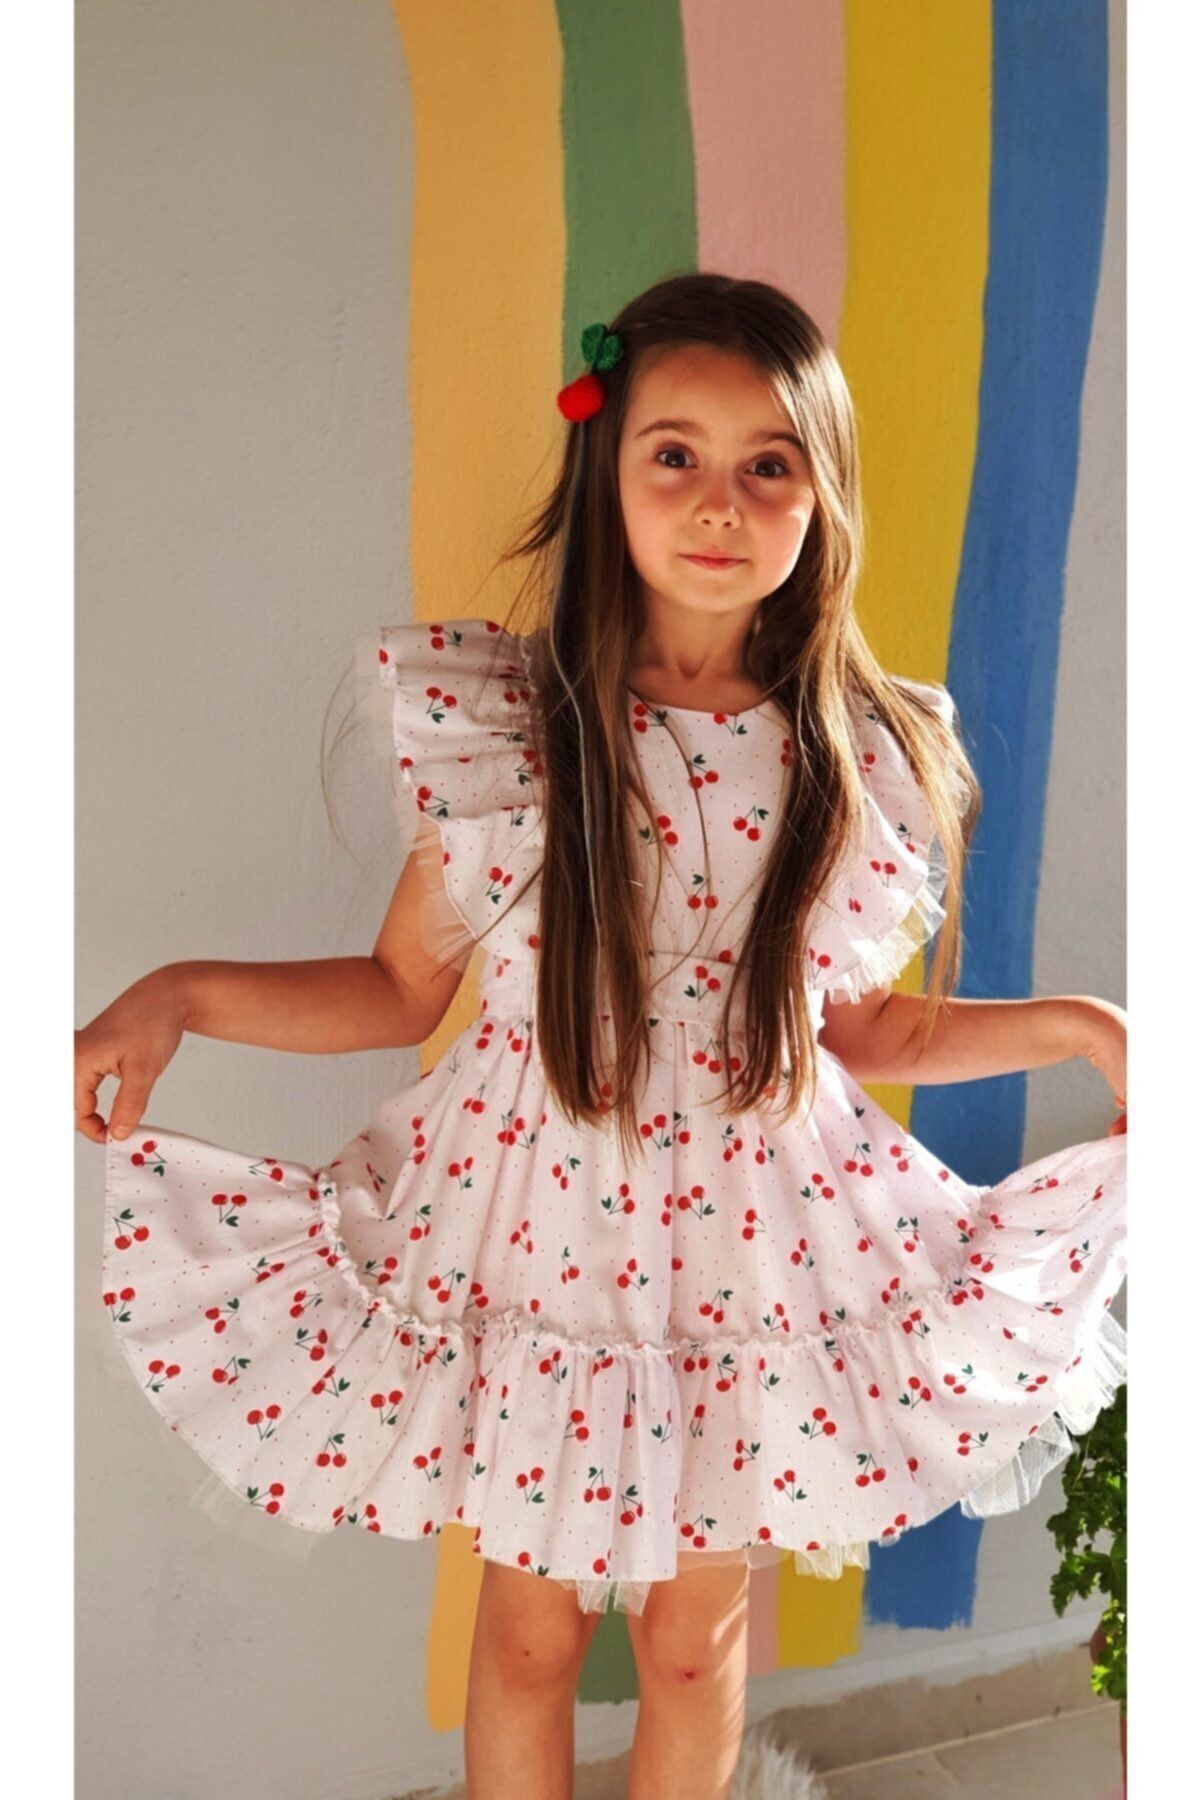 Rengarenk Minikler Kiraz Desenli Tül Detayli Kız Cocuk Elbisesi Ve Kiraz Tokaları (6-7-8YAŞ)